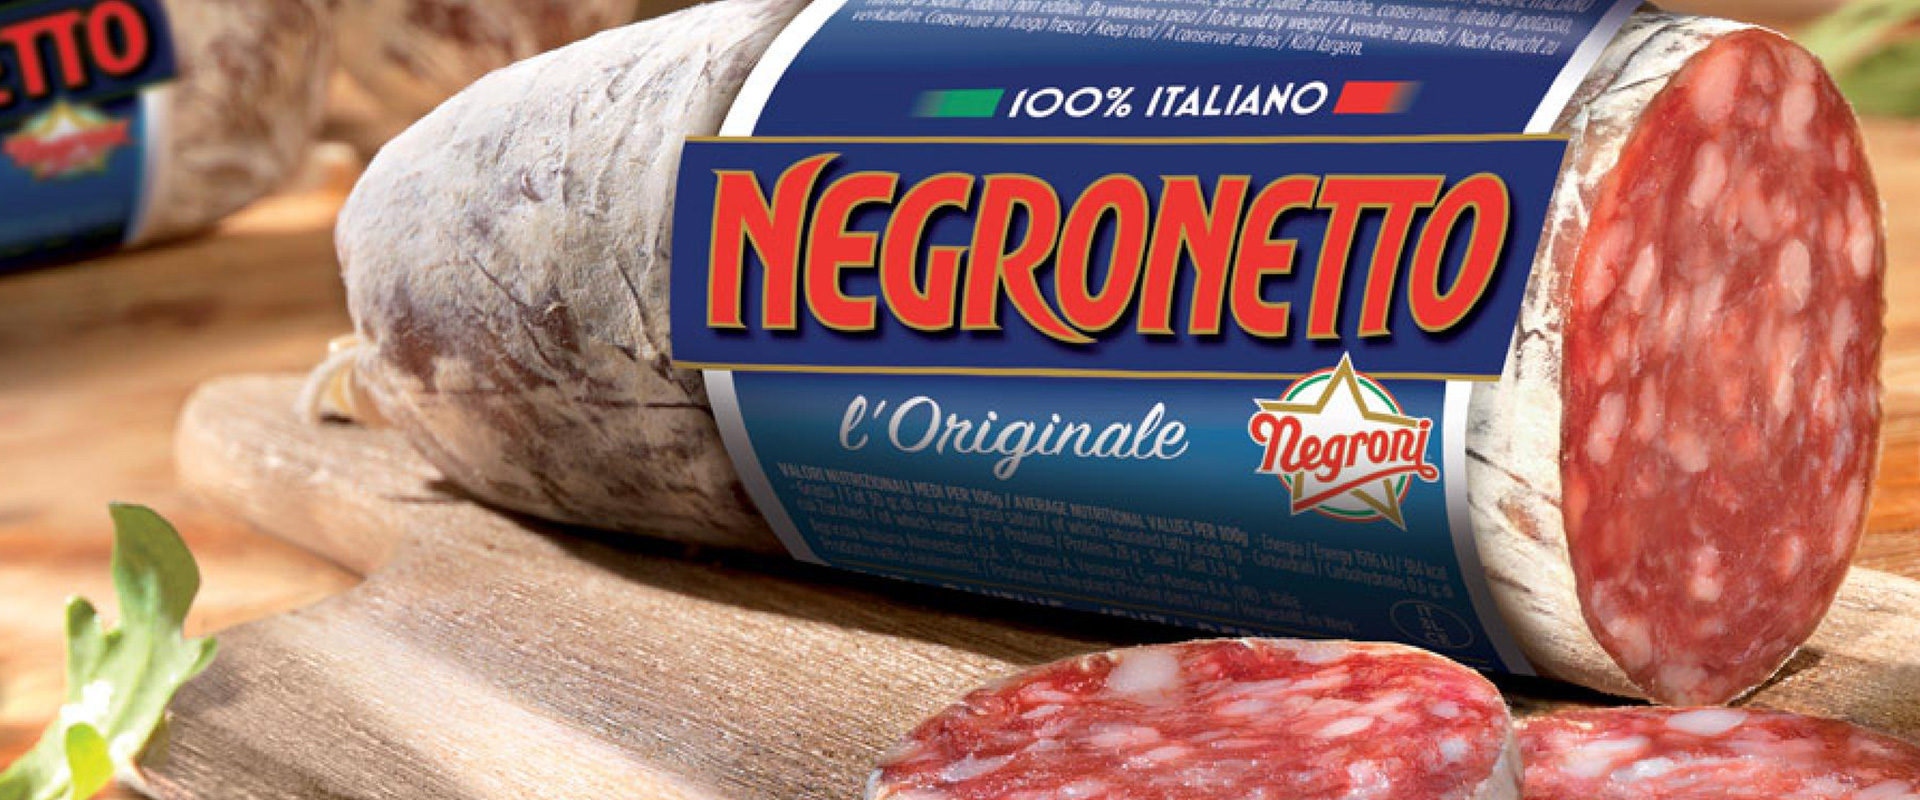 Negronetto l'Originale di Negroni Salumi